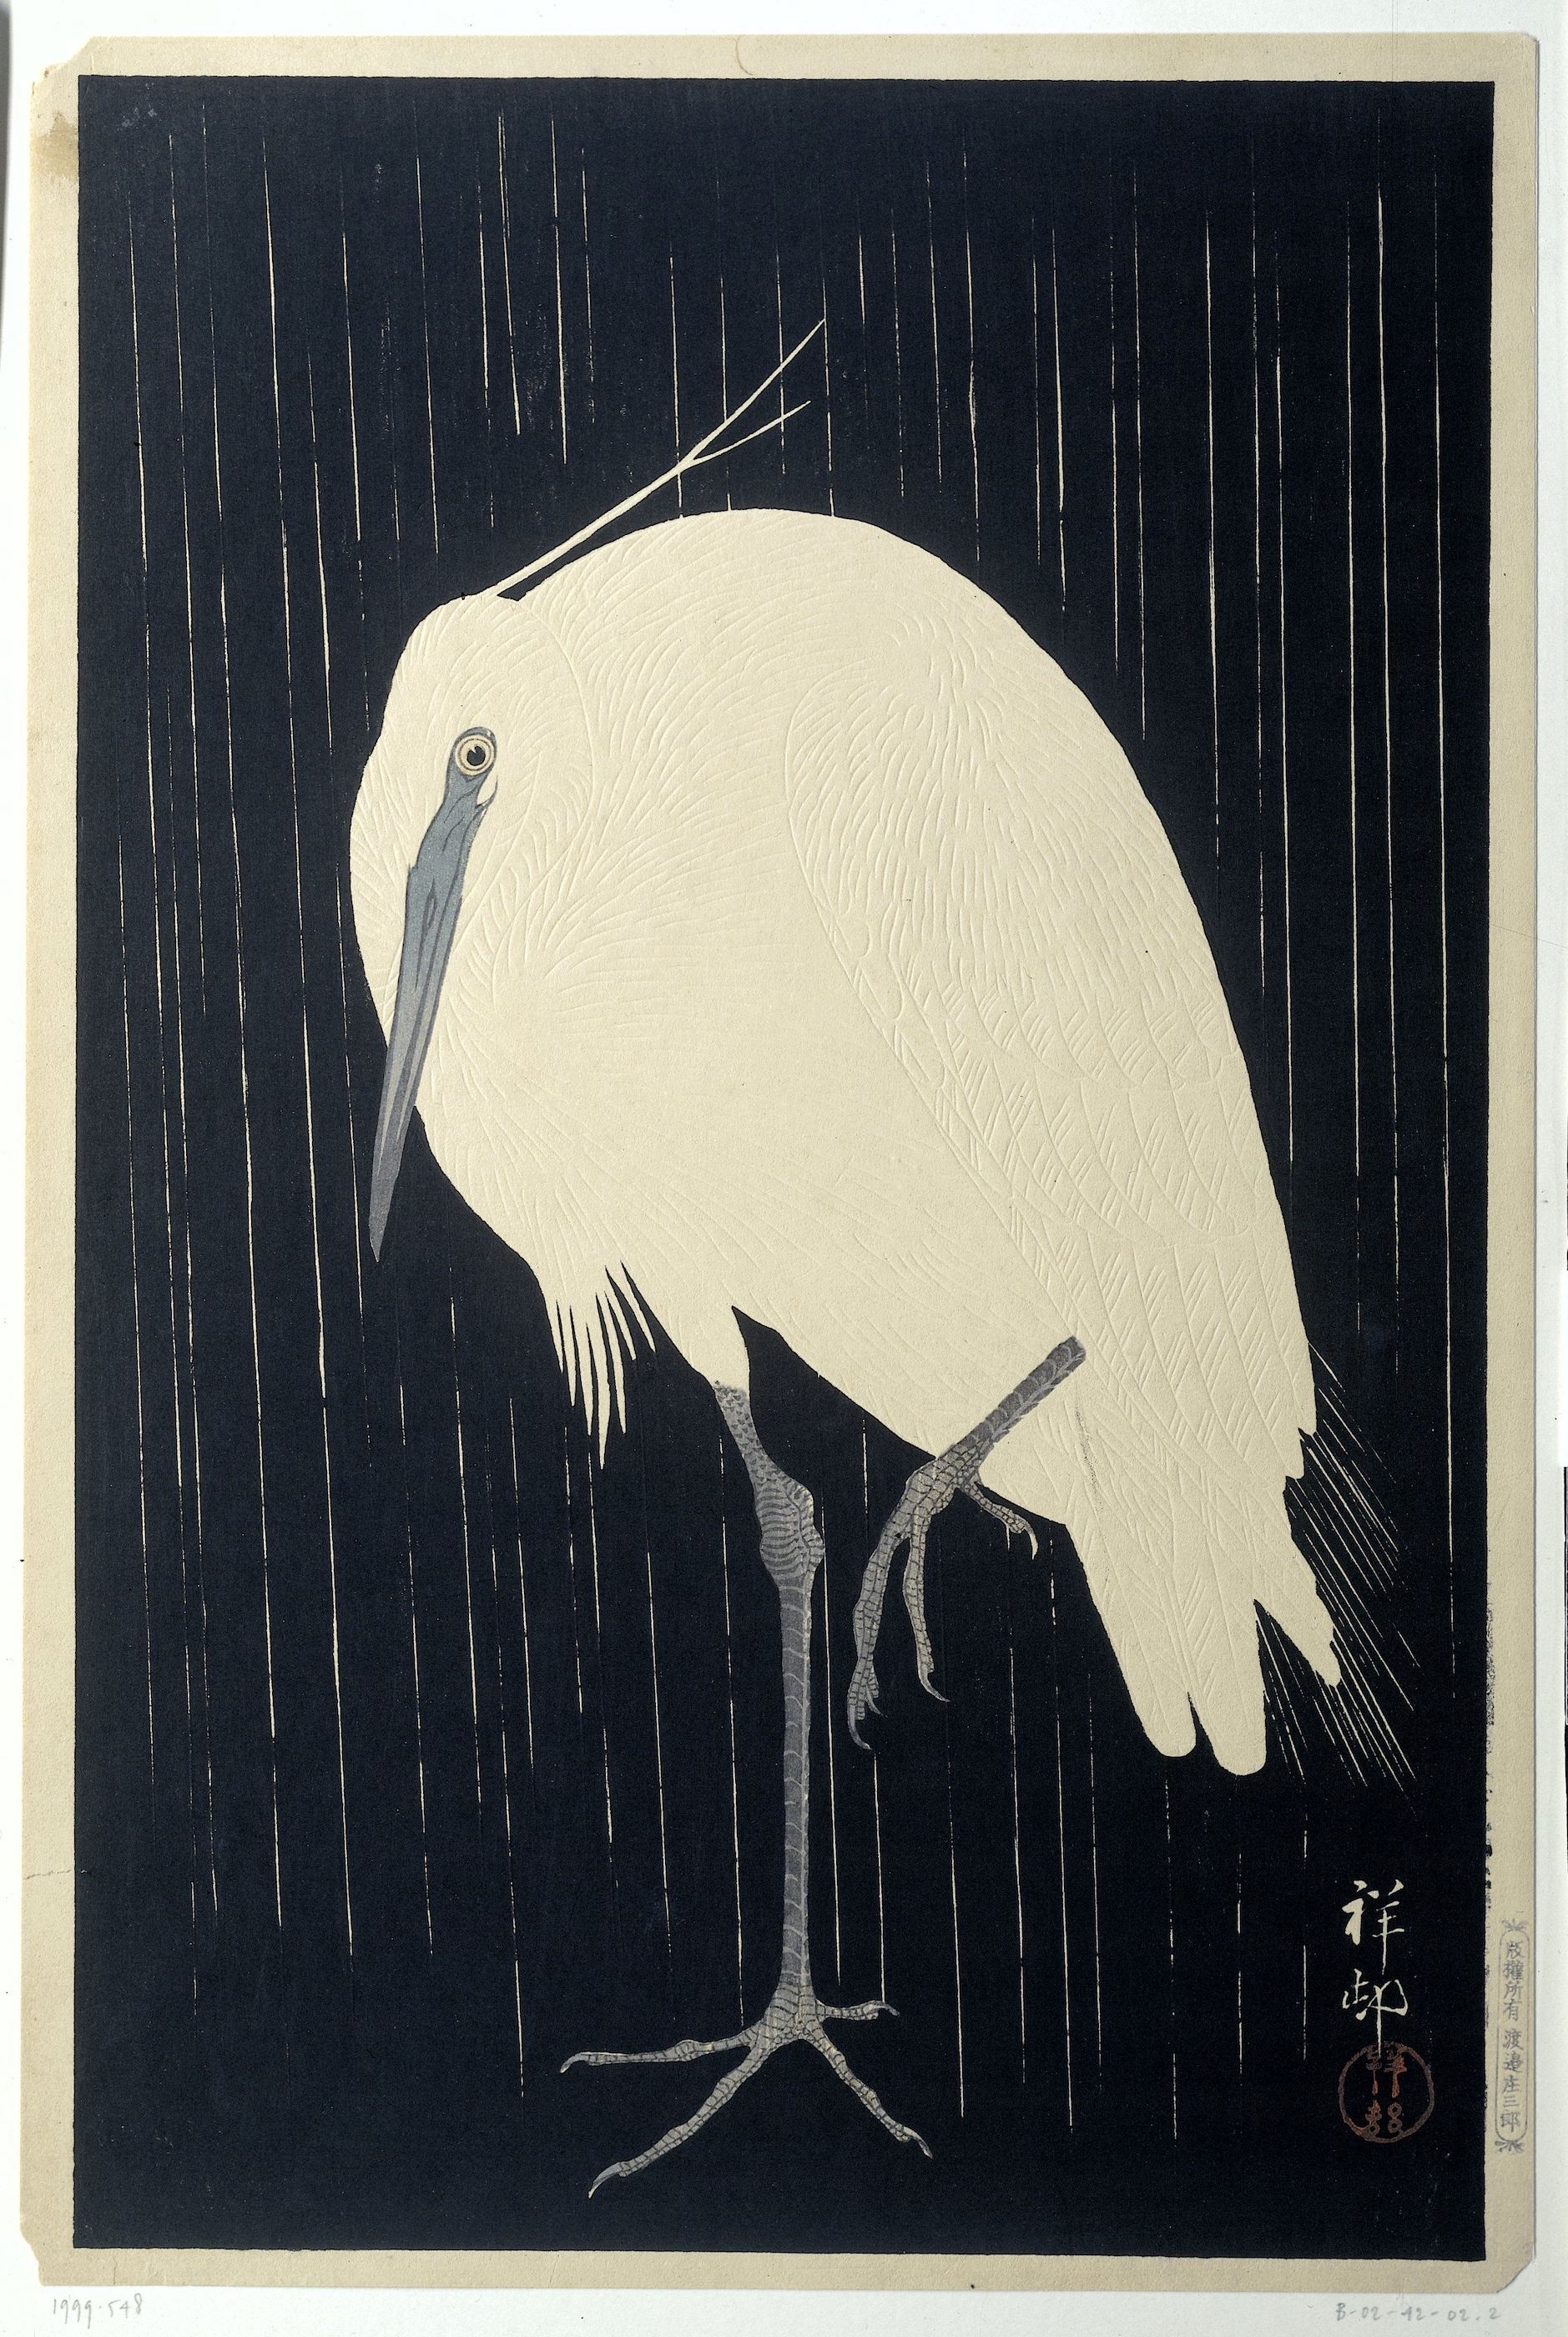 Reiger in de regen by Ohara Koson - 1928 - 36,3 x 24,1 cm 